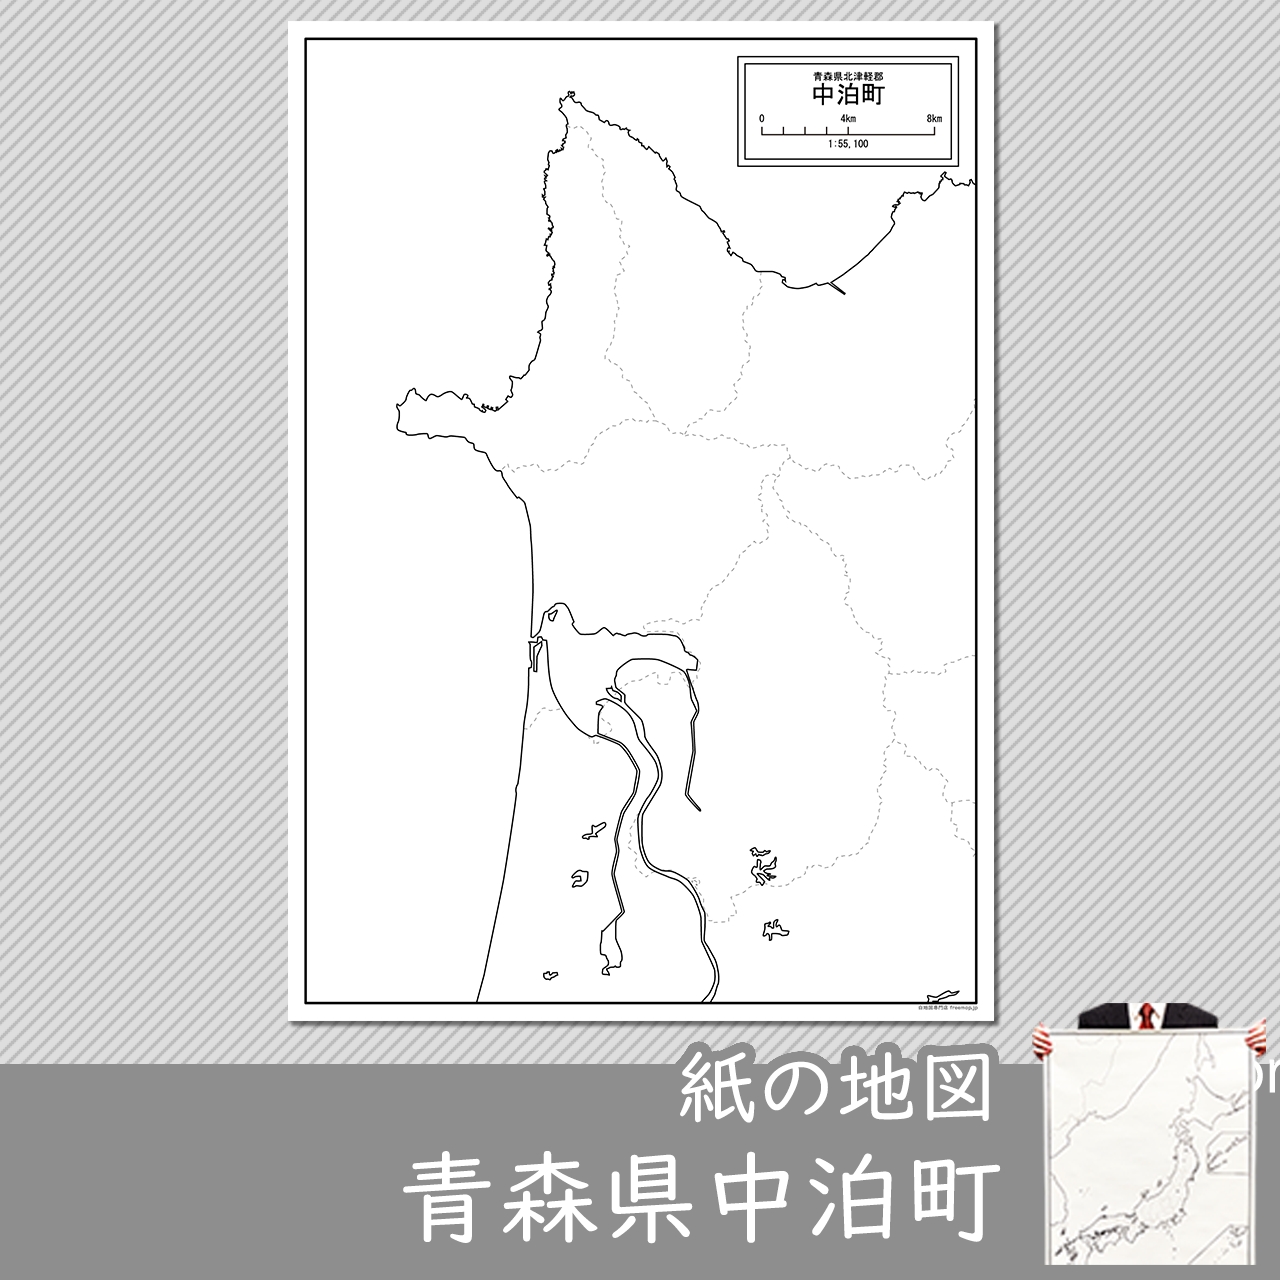 中泊町の紙の白地図のサムネイル